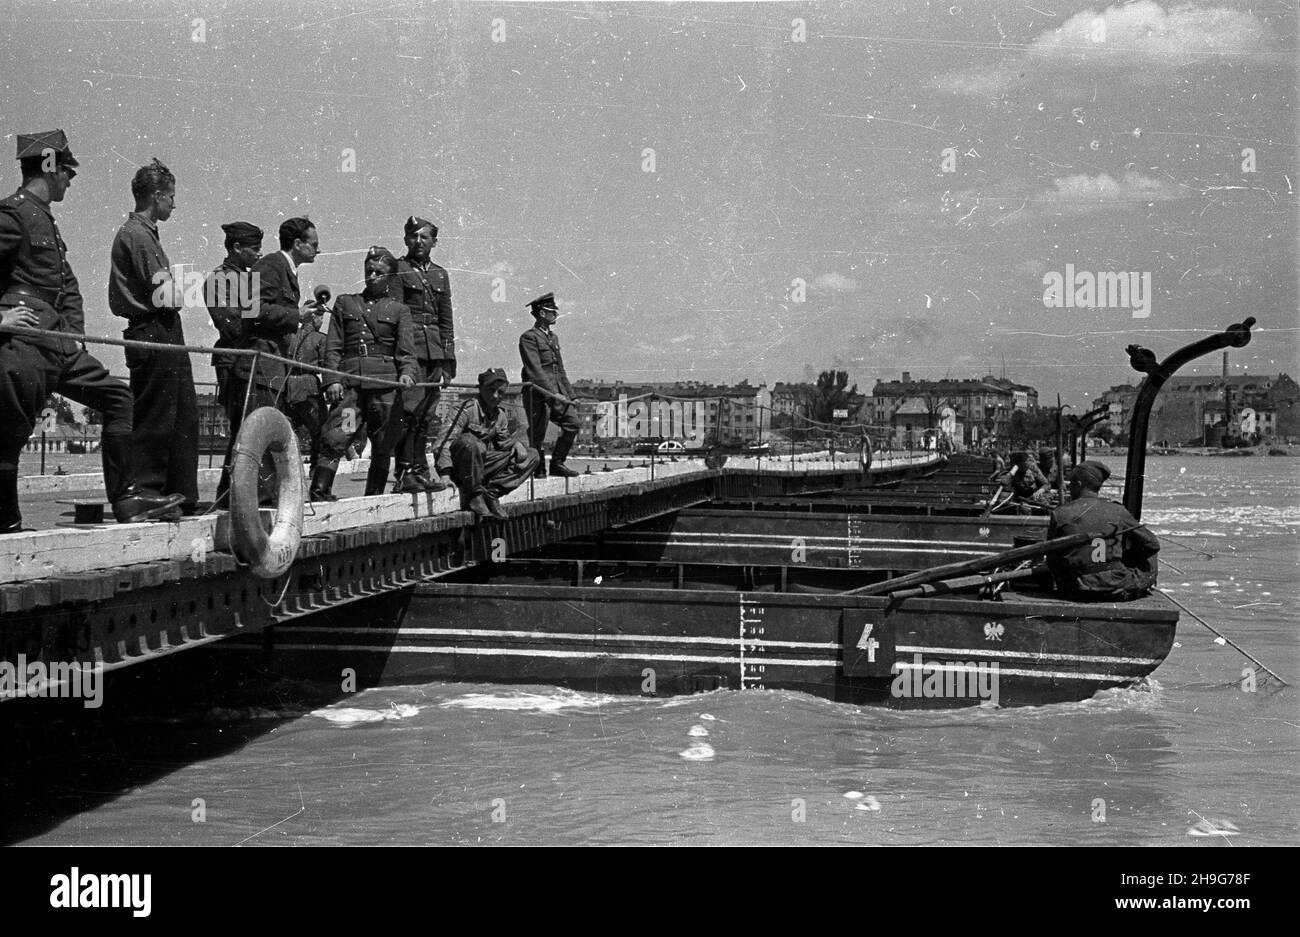 Warszawa, 1948-06. Przygotowania przed nadejœciem kulminacyjnej fali powodziowej na Wiœle. Zabezpieczanie mostu pontonowego. Nz. sprawozdawca radiowy relacjonuje stan przygotowañ, przeprowadza wywiad z saperami. Dok³adny dzieñ wydarzenia nieustalony.  as  PAP      Warsaw, June 1948. Preparations ahead of flood-wave peak on the Vistula River. Work to secure a pontoon bridge against flood. Pictured: a radio commentator reporting on the preparations, interviewing sappers.  as  PAP Stock Photo